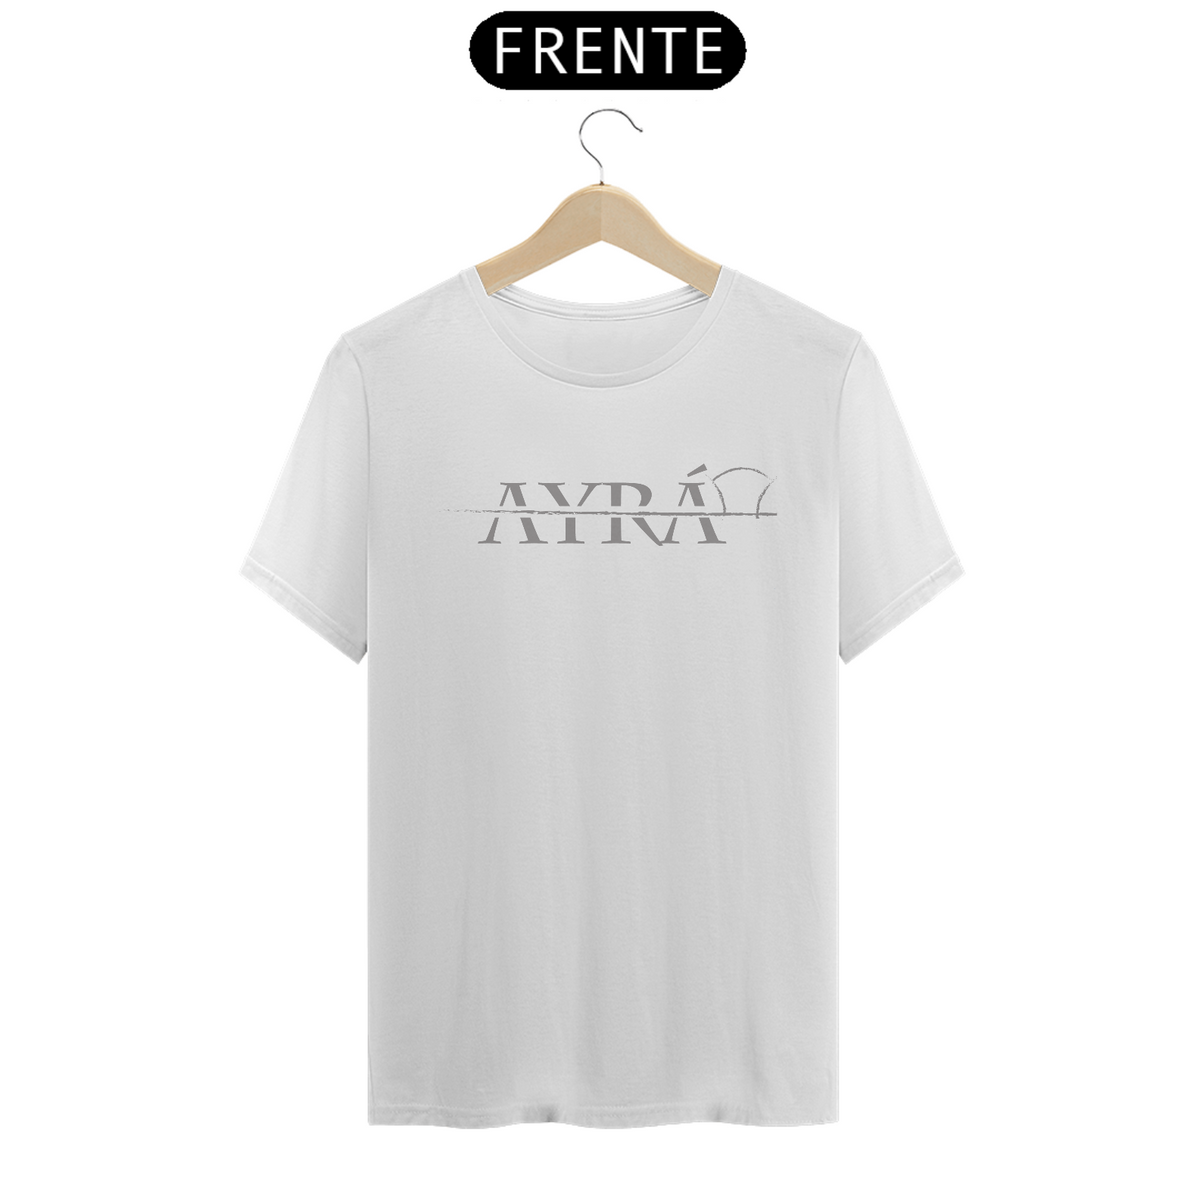 Nome do produto: T-Shirt Classic Branca - Okan Ayrá